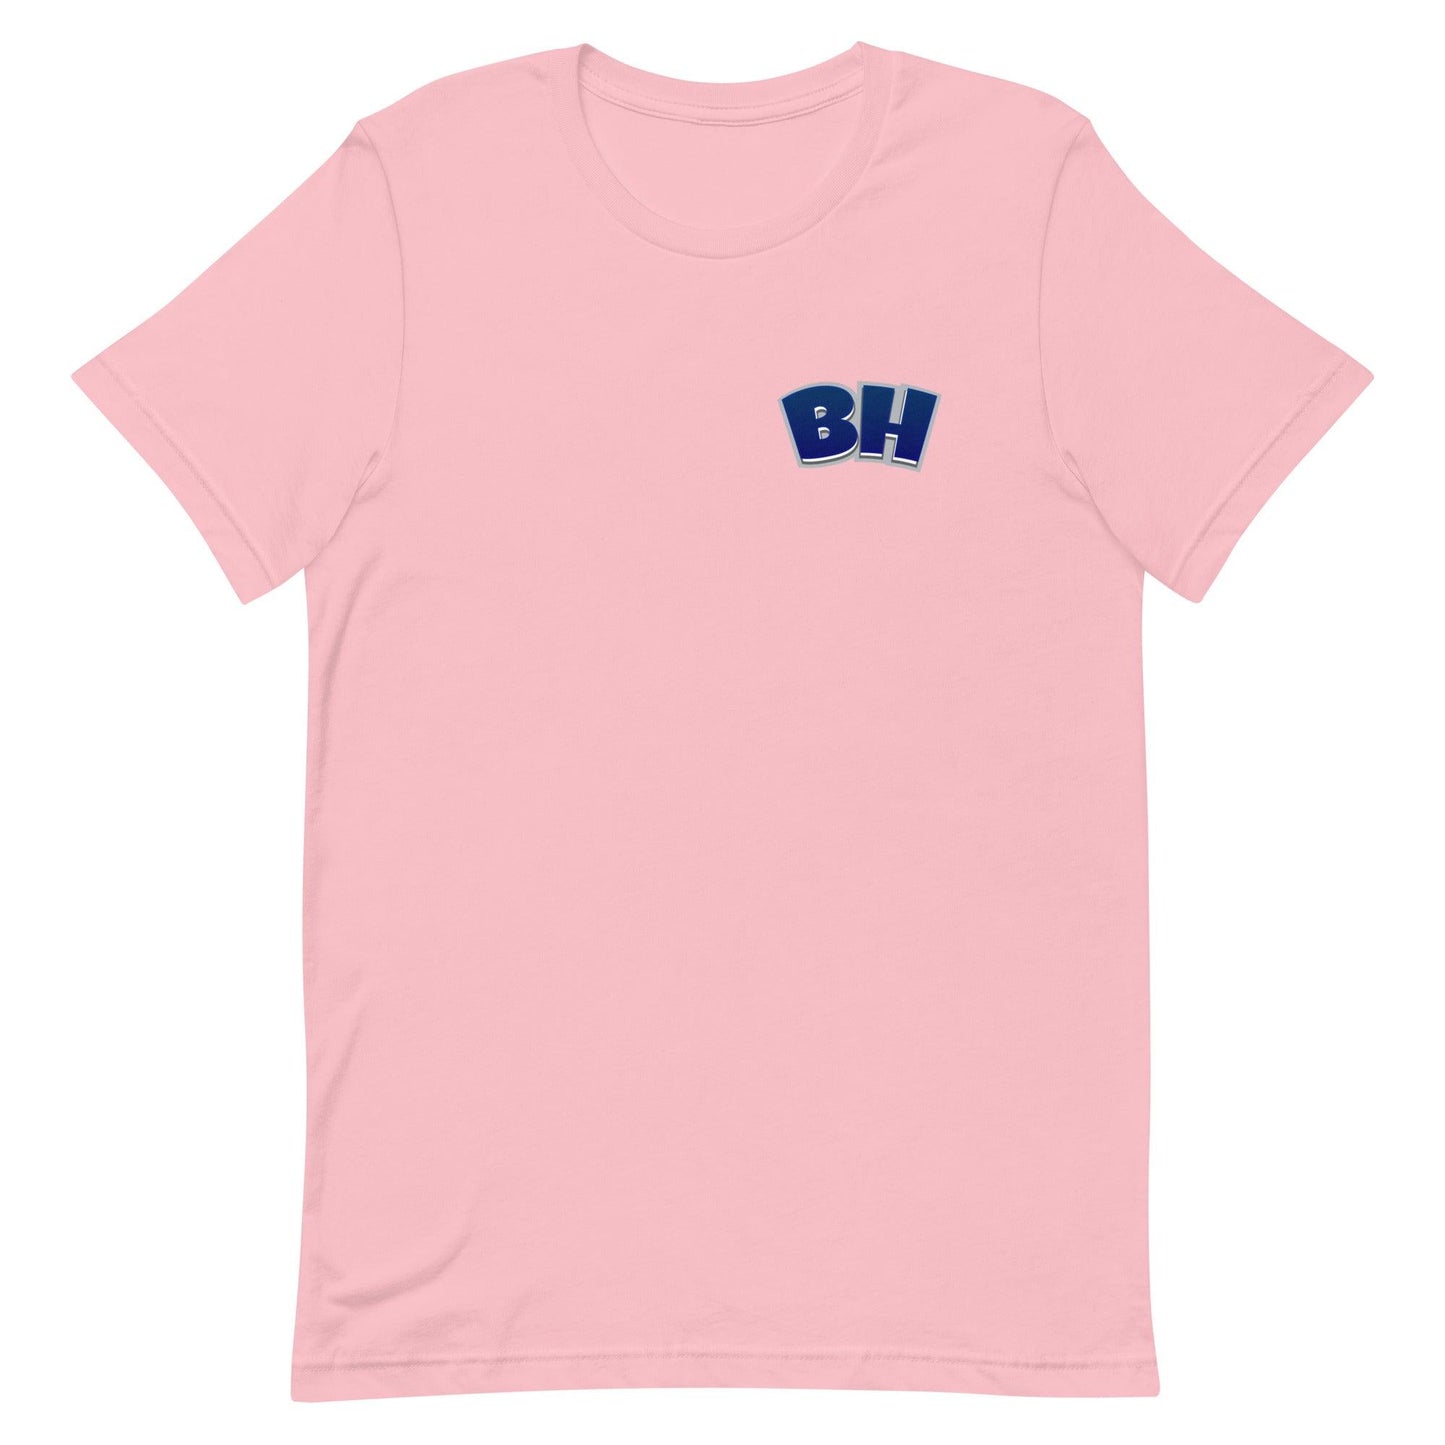 Boom Herron "Essential" t-shirt - Fan Arch